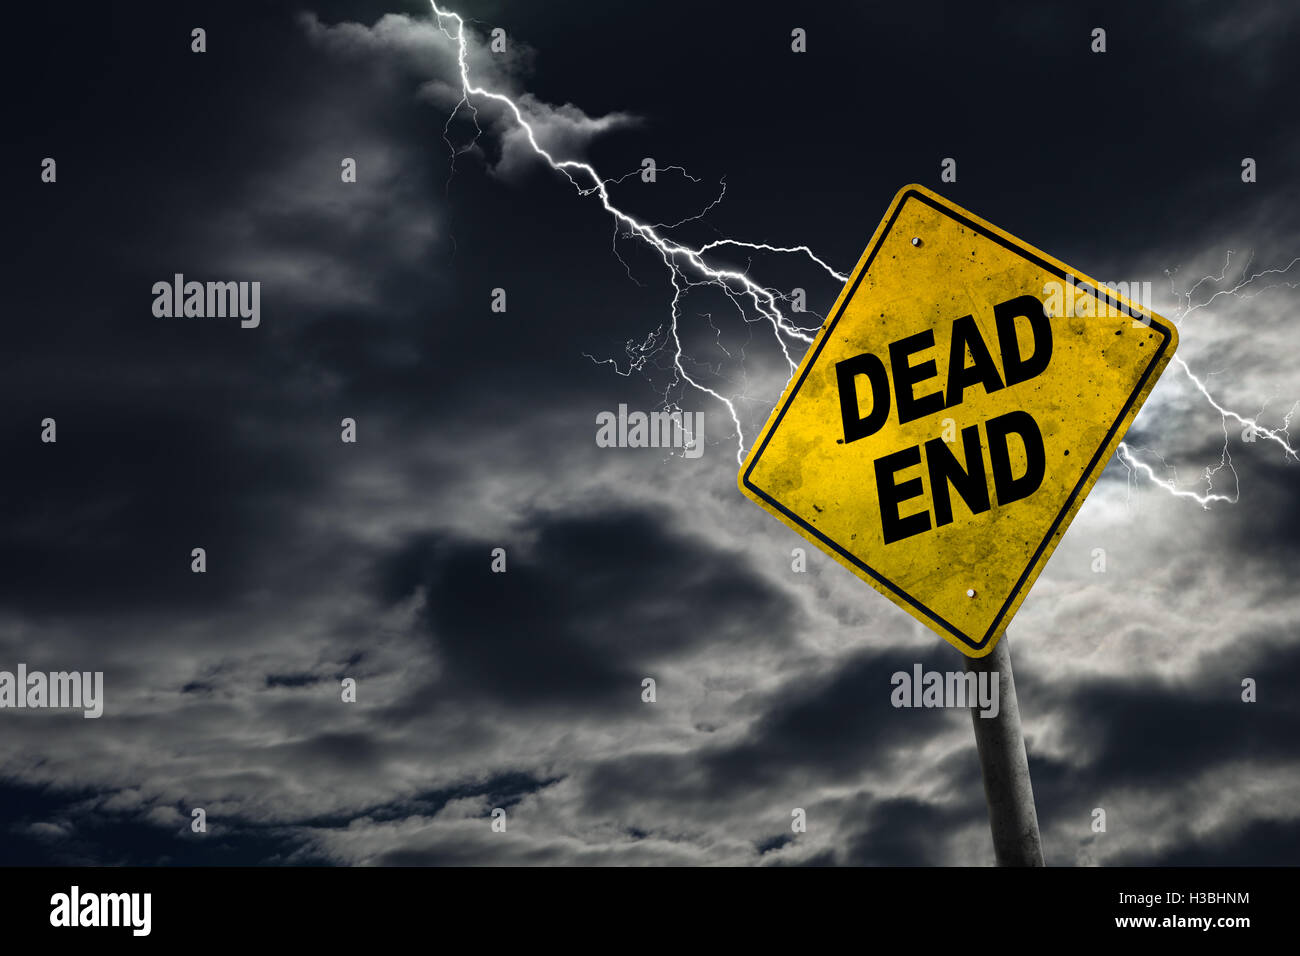 Dead End road sign contro un sfondo tempestoso con lampi e copia di spazio. Sporco e cartello angolato aggiunge al dramma. Foto Stock